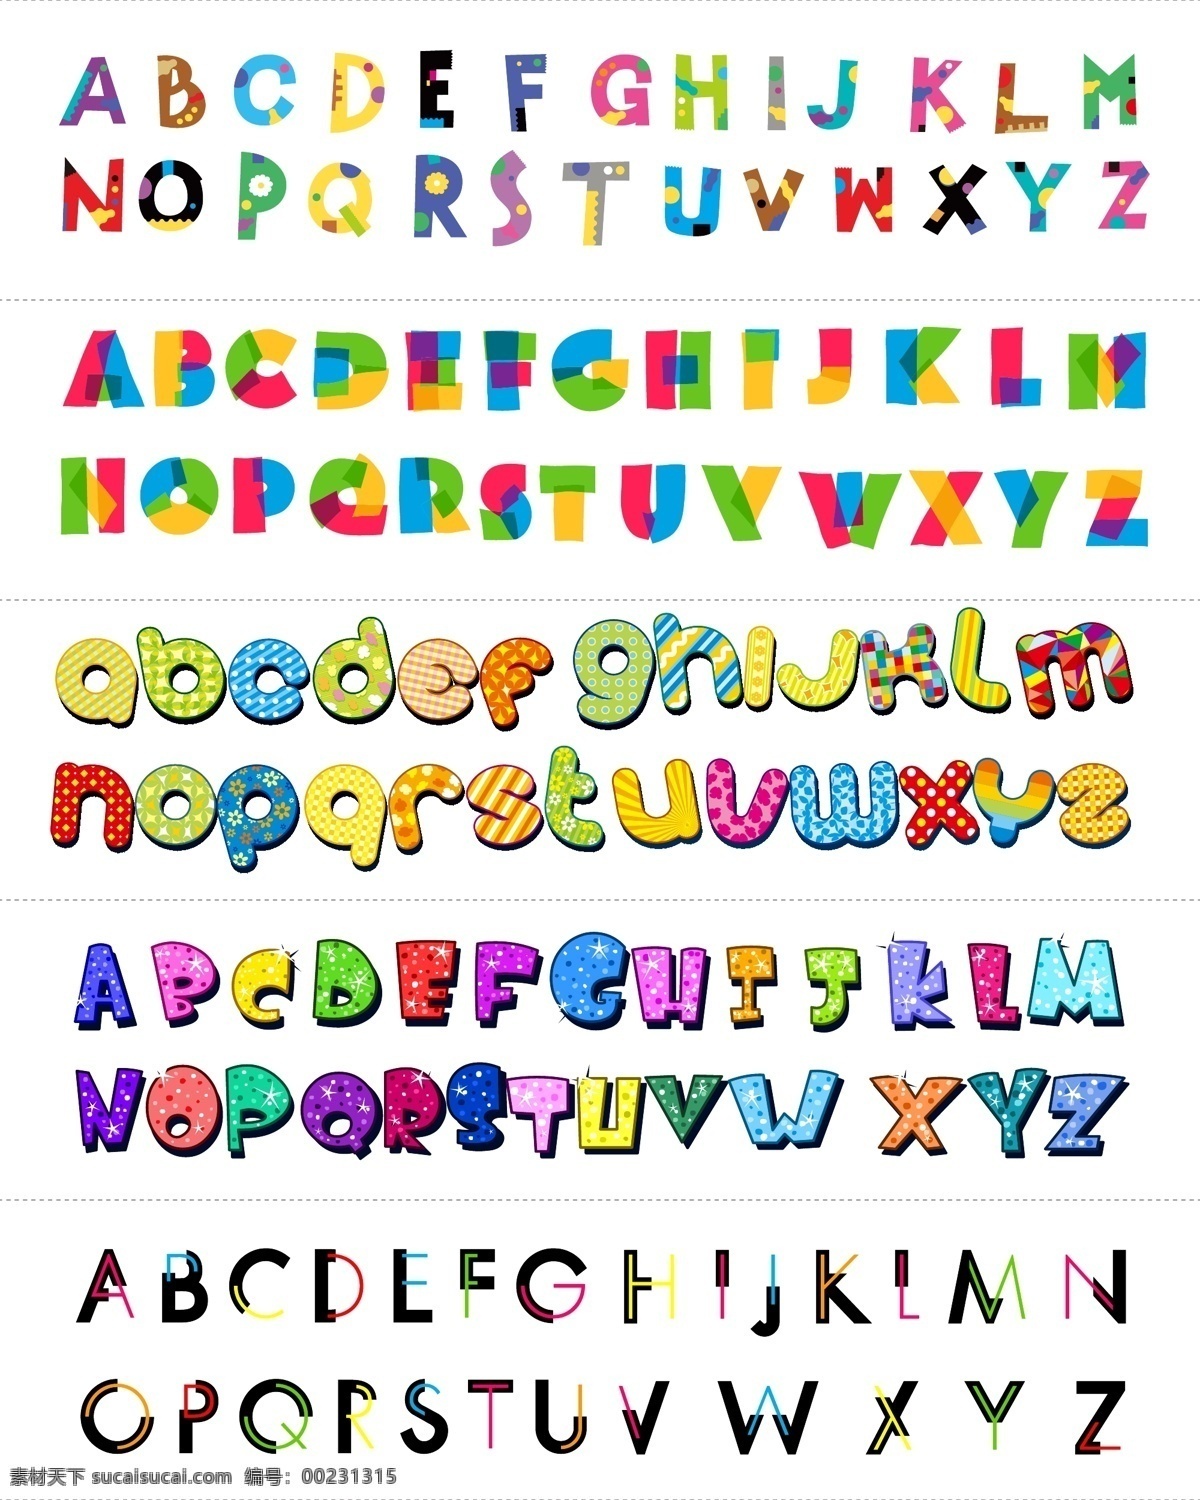 矢量 彩色 英文 字母 矢量字母 彩色字母 英文字母 卡通字母 方块字母 可爱字母 儿童字母 活泼字母 质感字母 简洁字母 简约字母 手绘字母 手写字母 绘画字母 时尚字母 现代字母 图案字母 数字字母 文化艺术 绘画书法